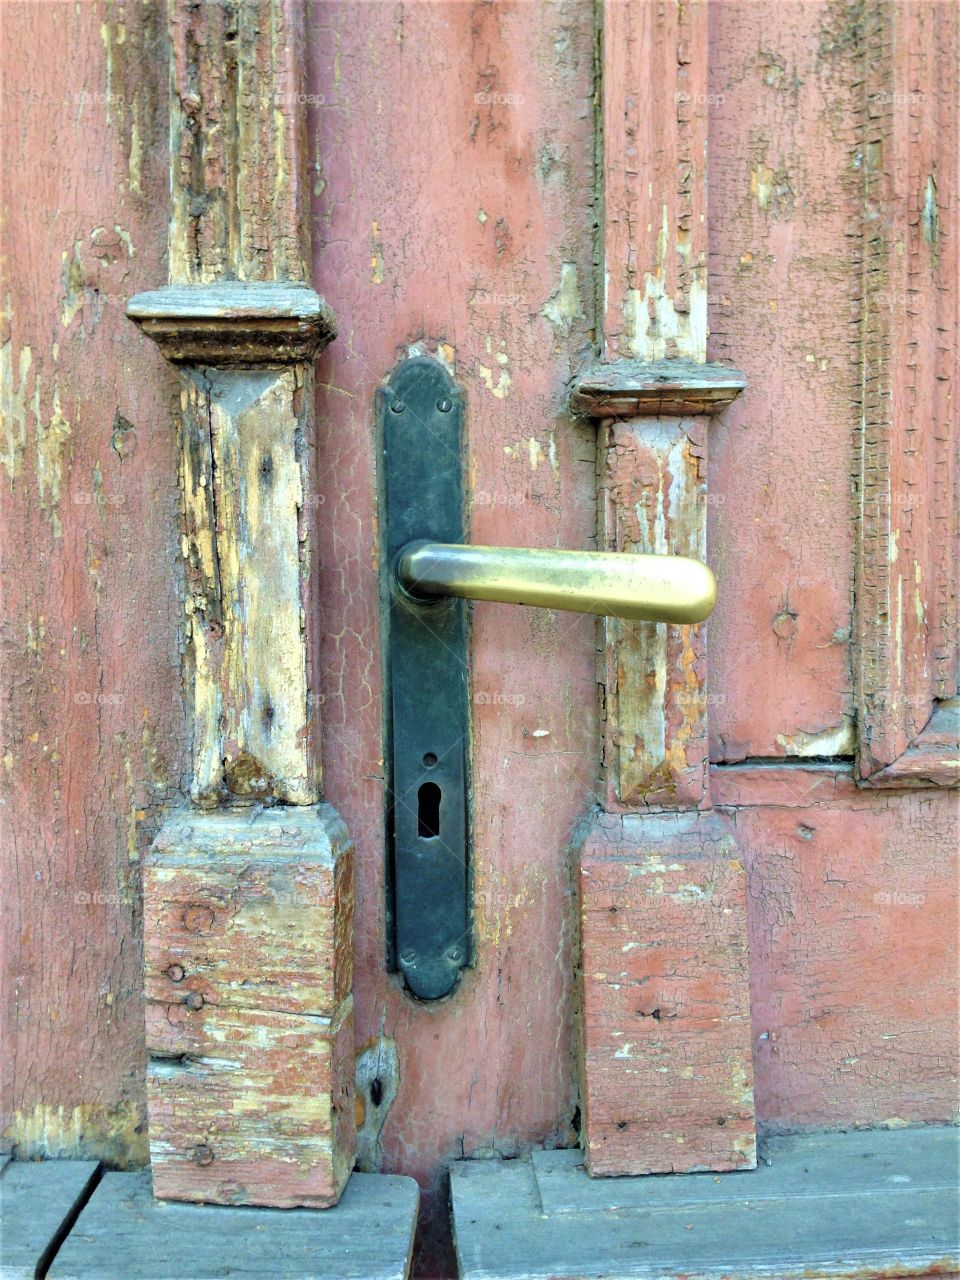 Lock at the door